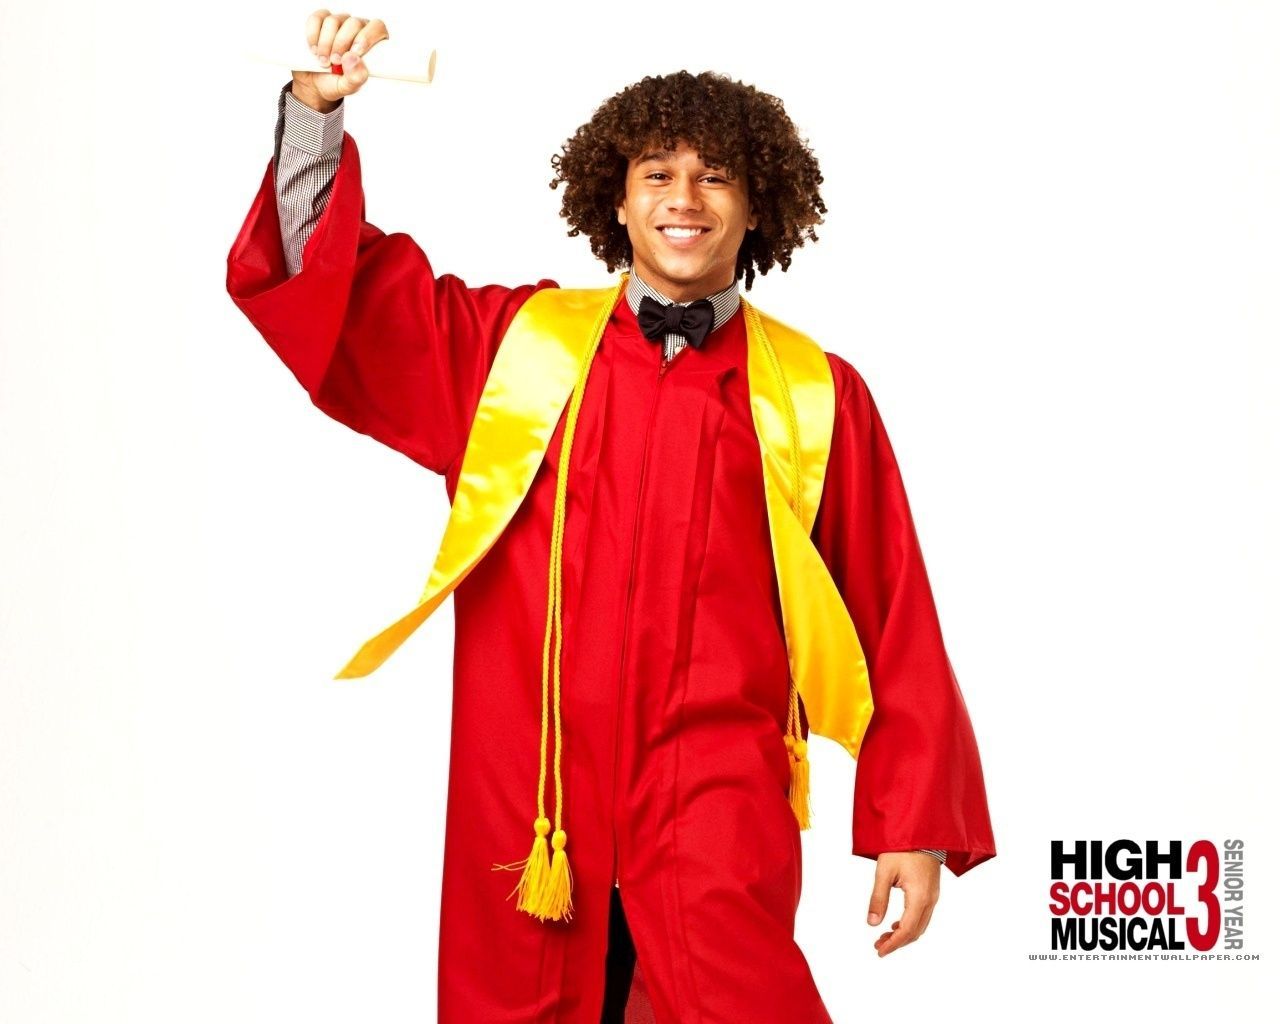 High School Musical 3 Wallpaper: HSm 3. High school musical, High school musical High school